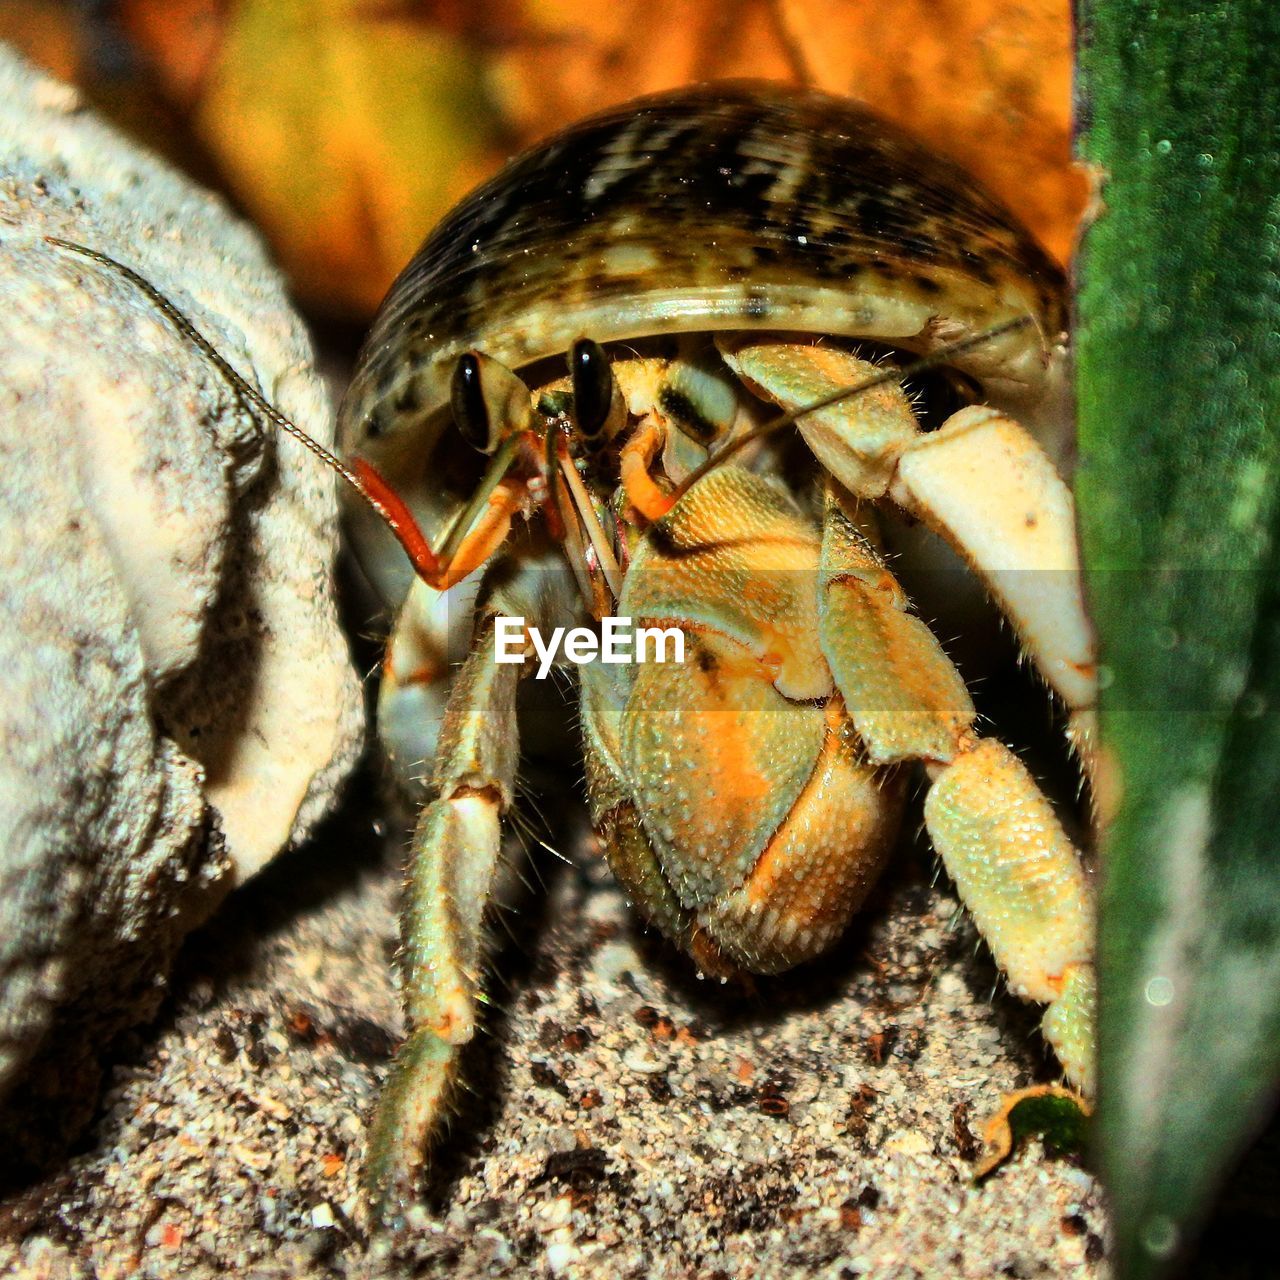 Close up of a crab